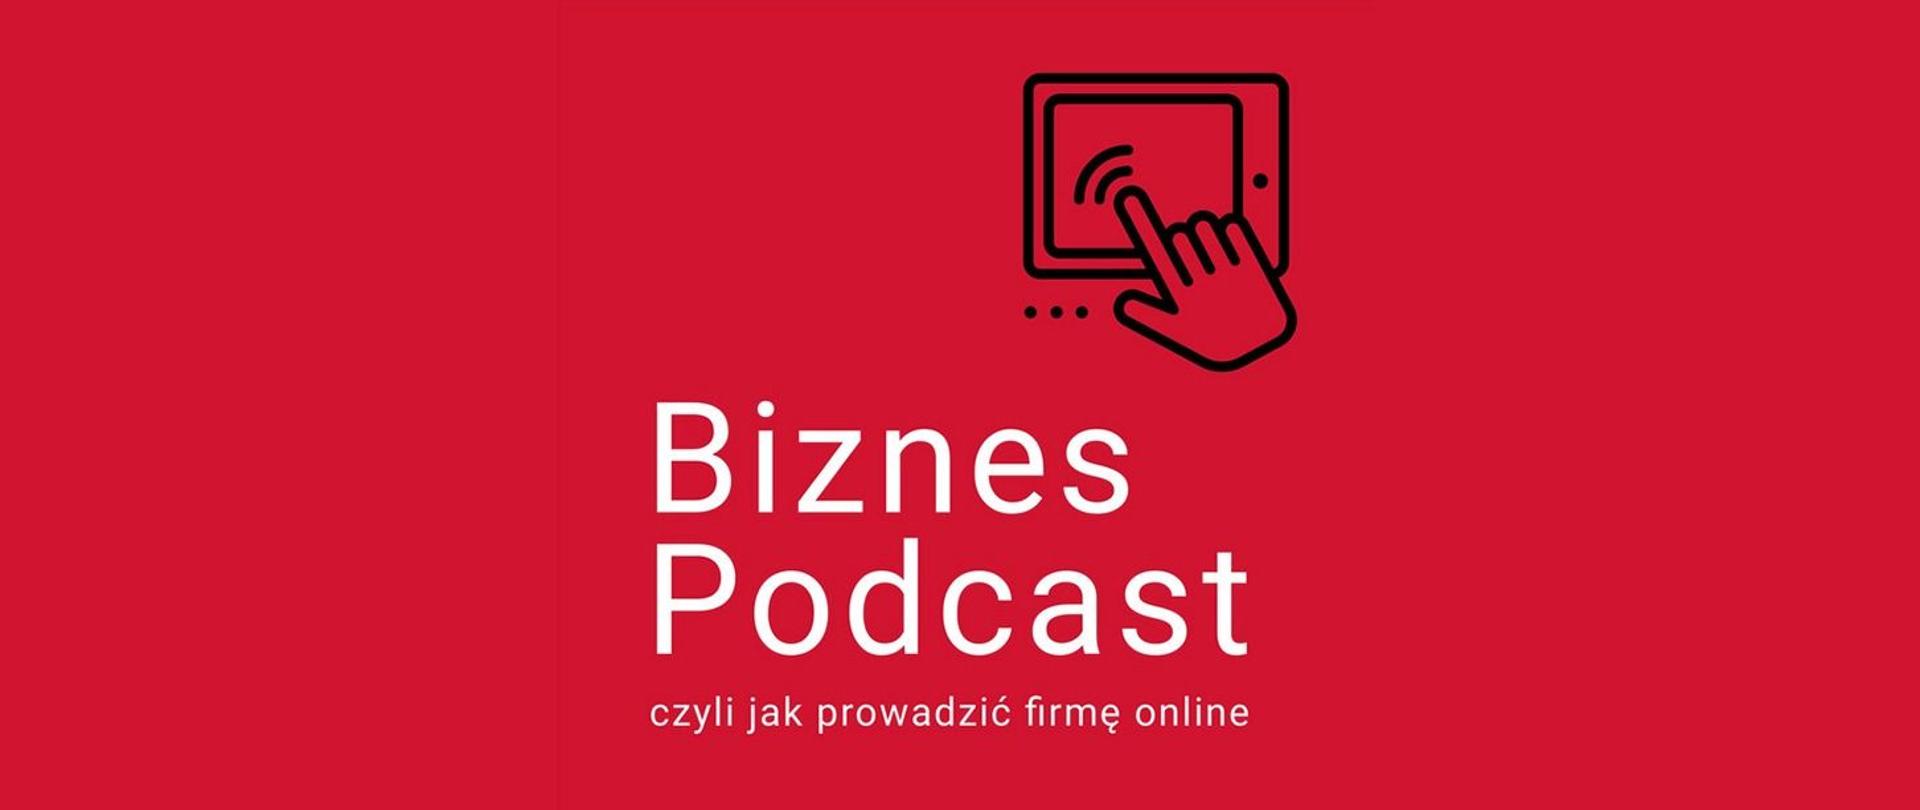 Na czerwonym tle napis Biznes Podcast, czyli jak prowadzić firmę online oraz ikonka dłoni i ekranu tableta